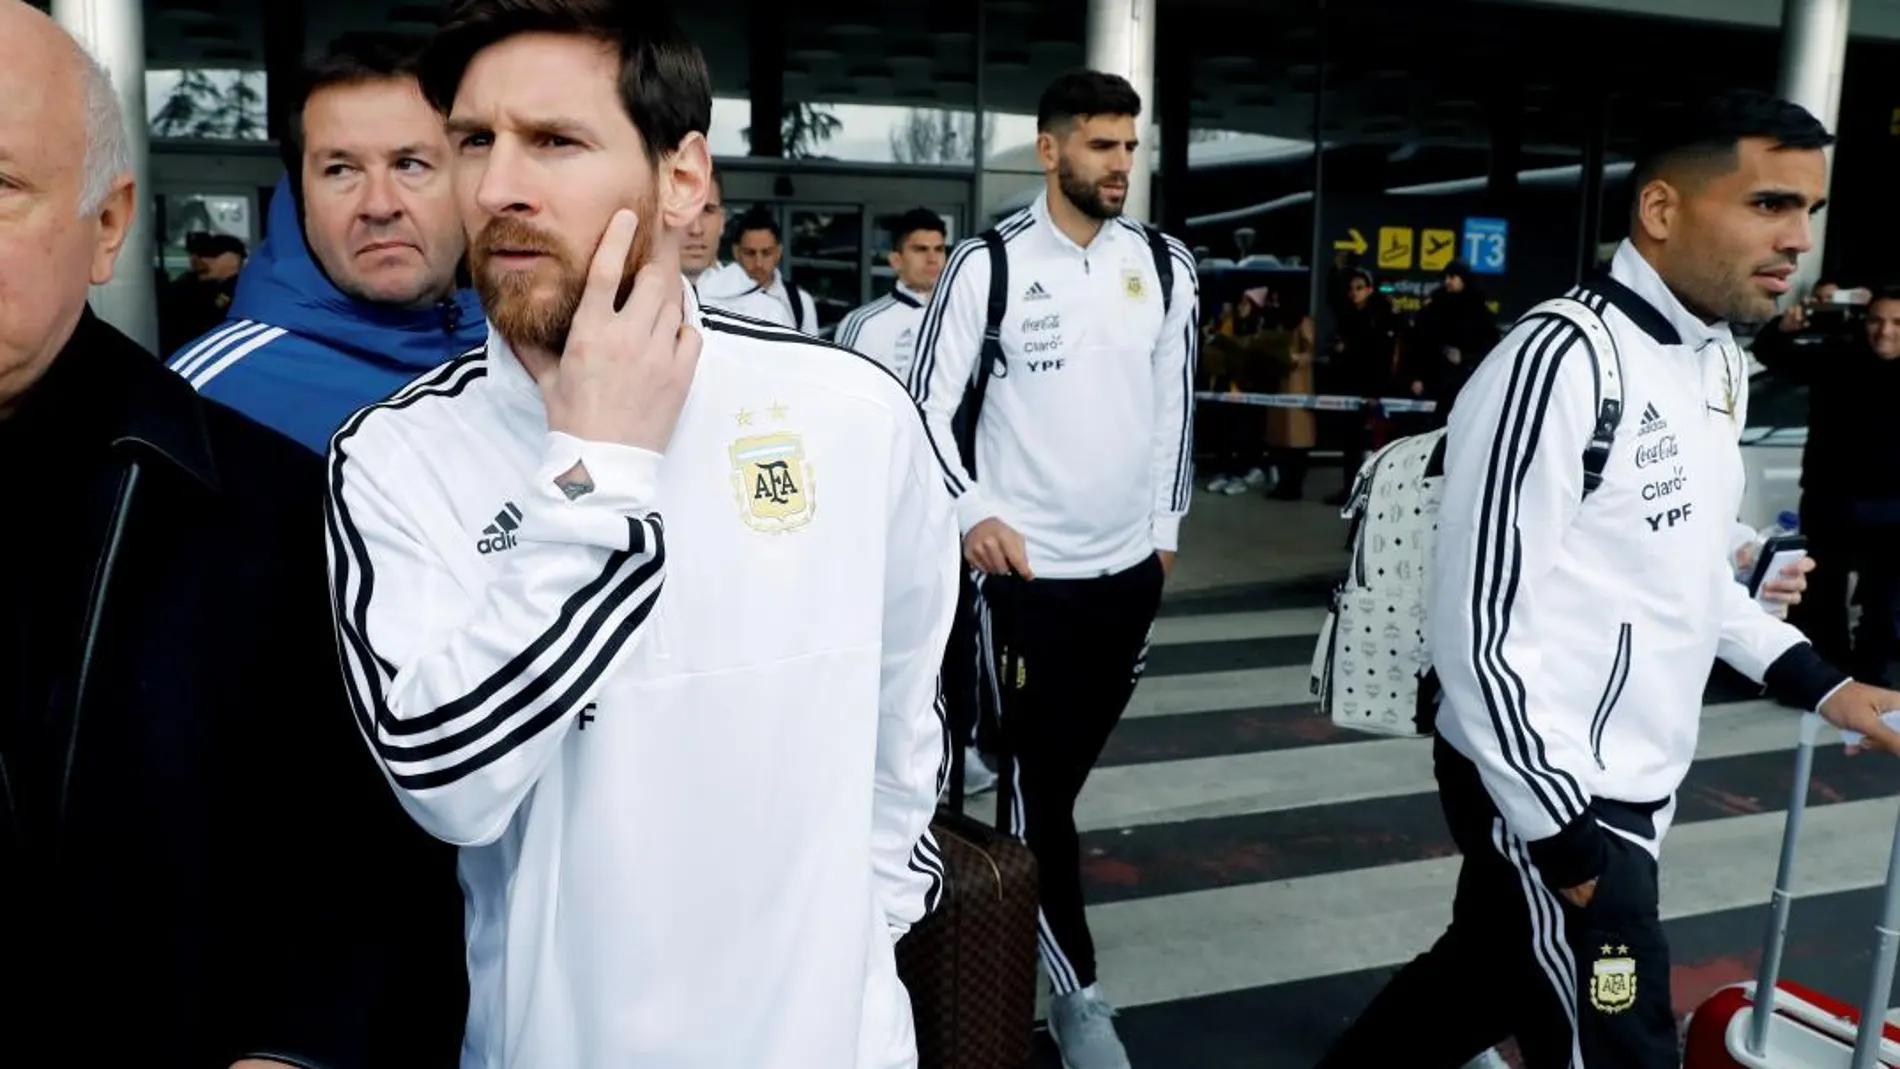 El delantero de la selección de Argentina, Lionel Messi, en su llegada al aeropuerto Adolfo Suárez Barajas de Madrid, para su partido contra la selección de España del próximo martes en el estadio Wanda Metropolitano